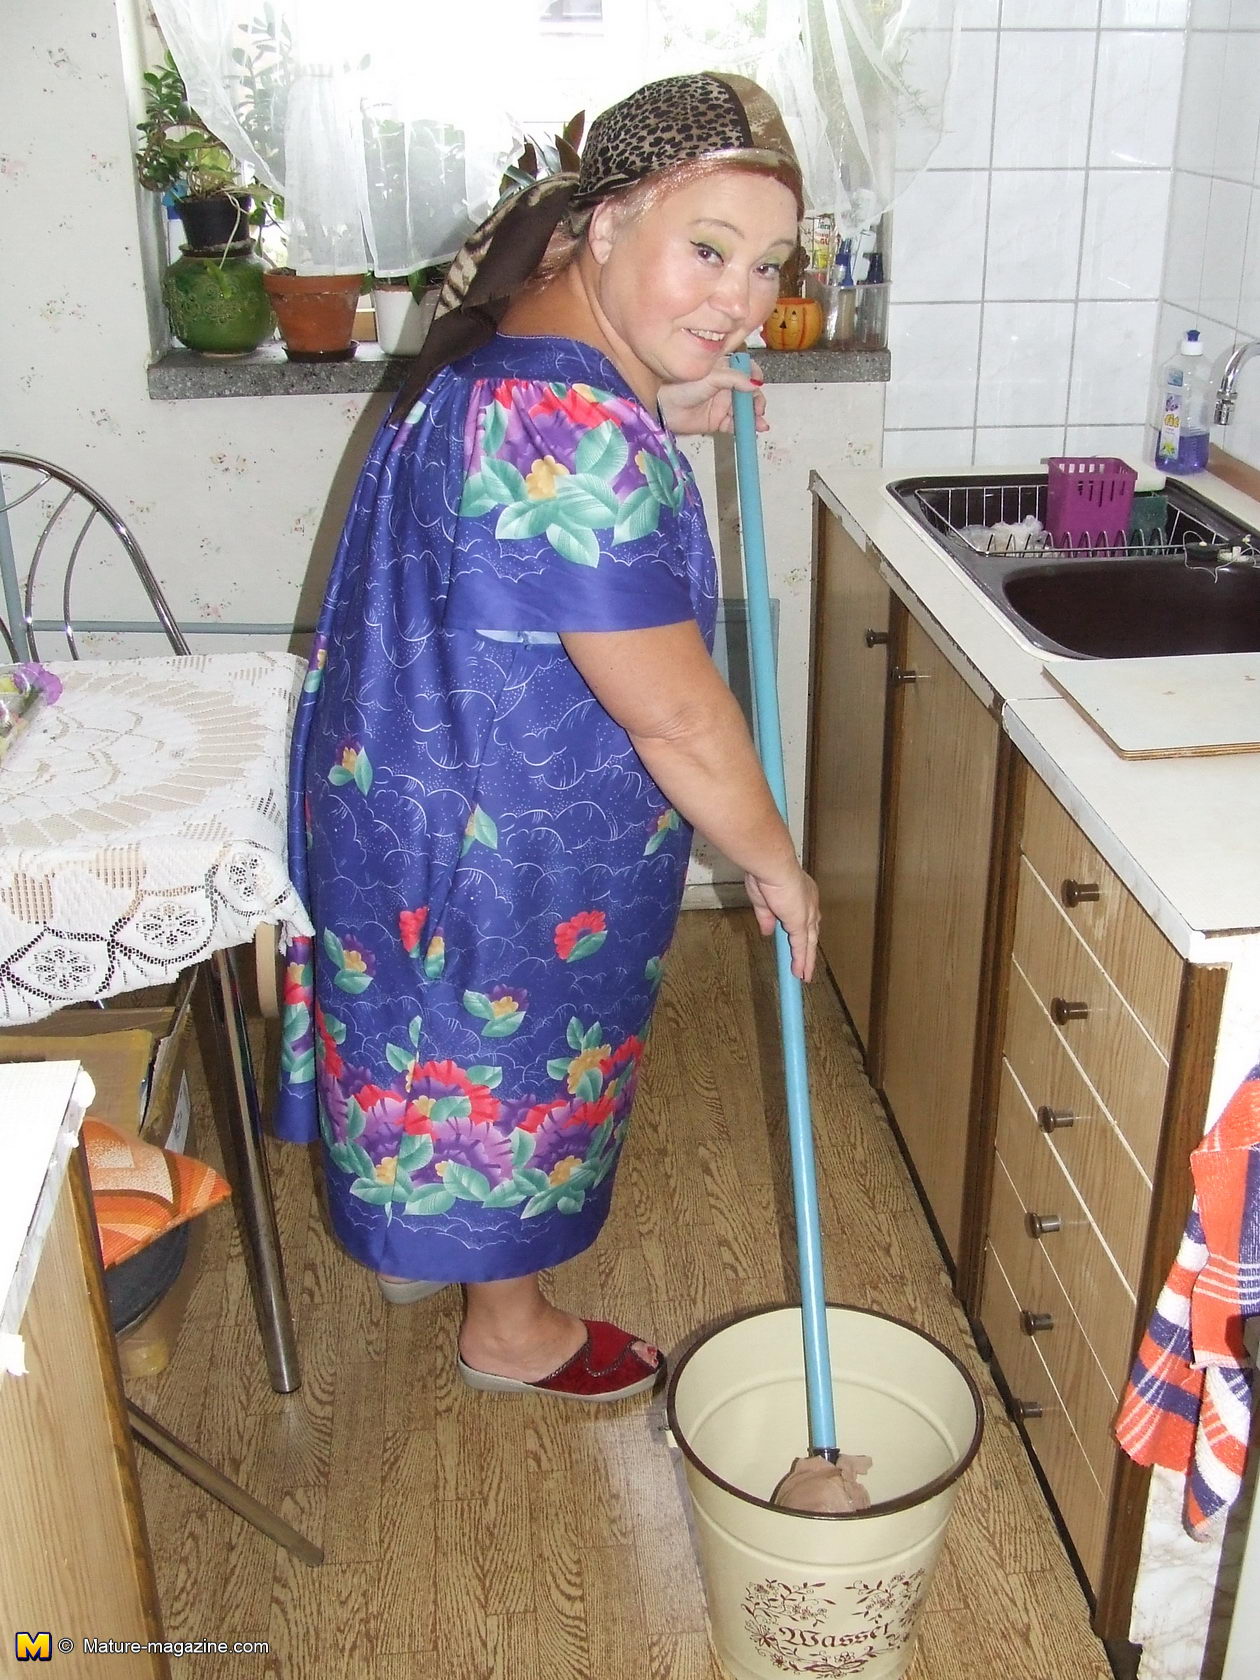 Cleaning grandma